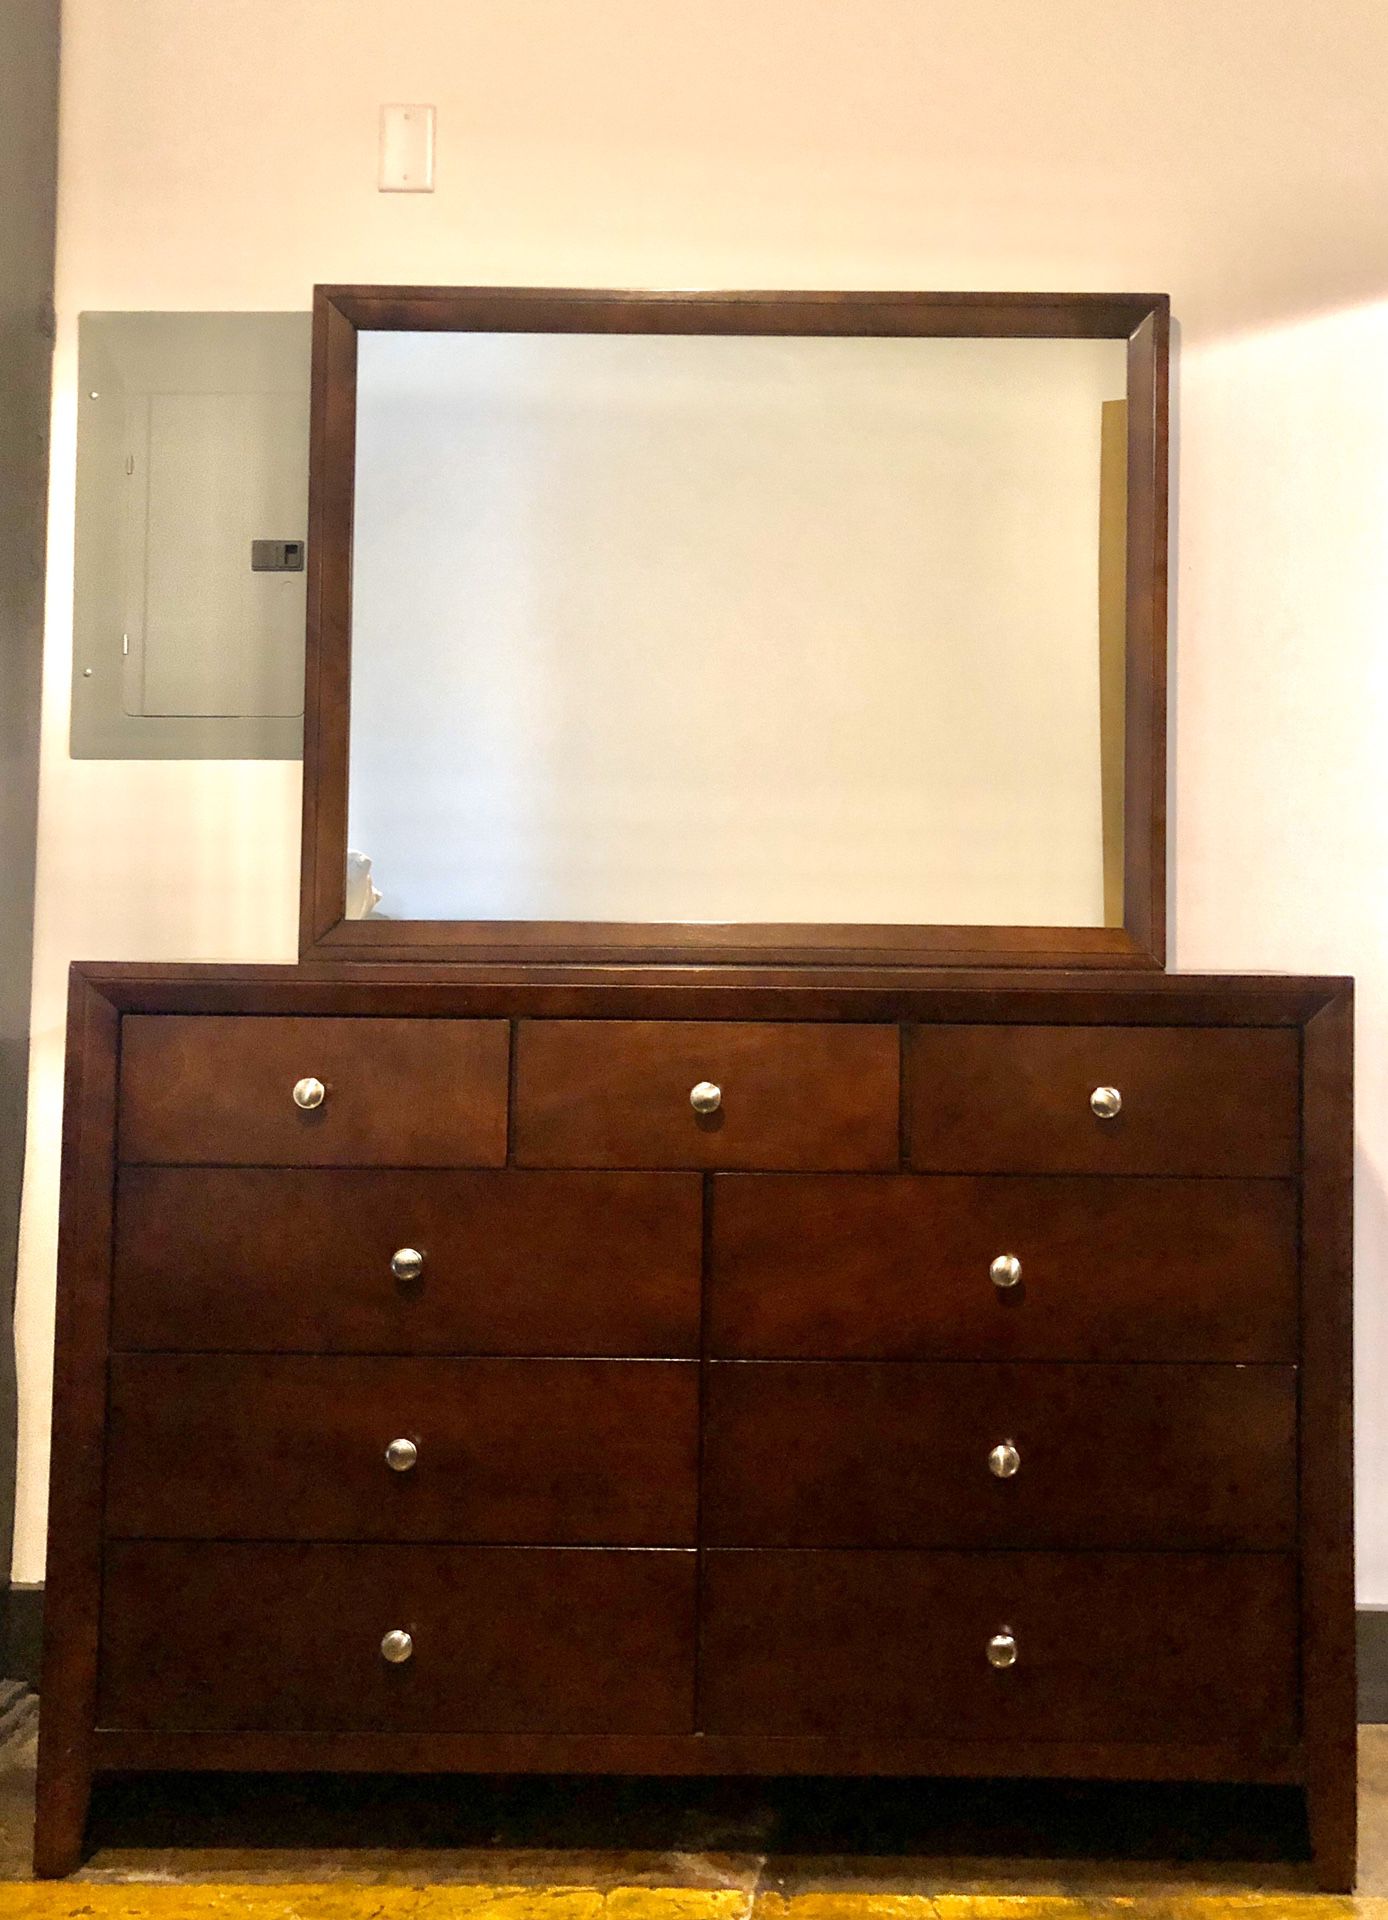 Solid wood bedroom set (dresser with mirror, queen bed frame, 1 nightstand)